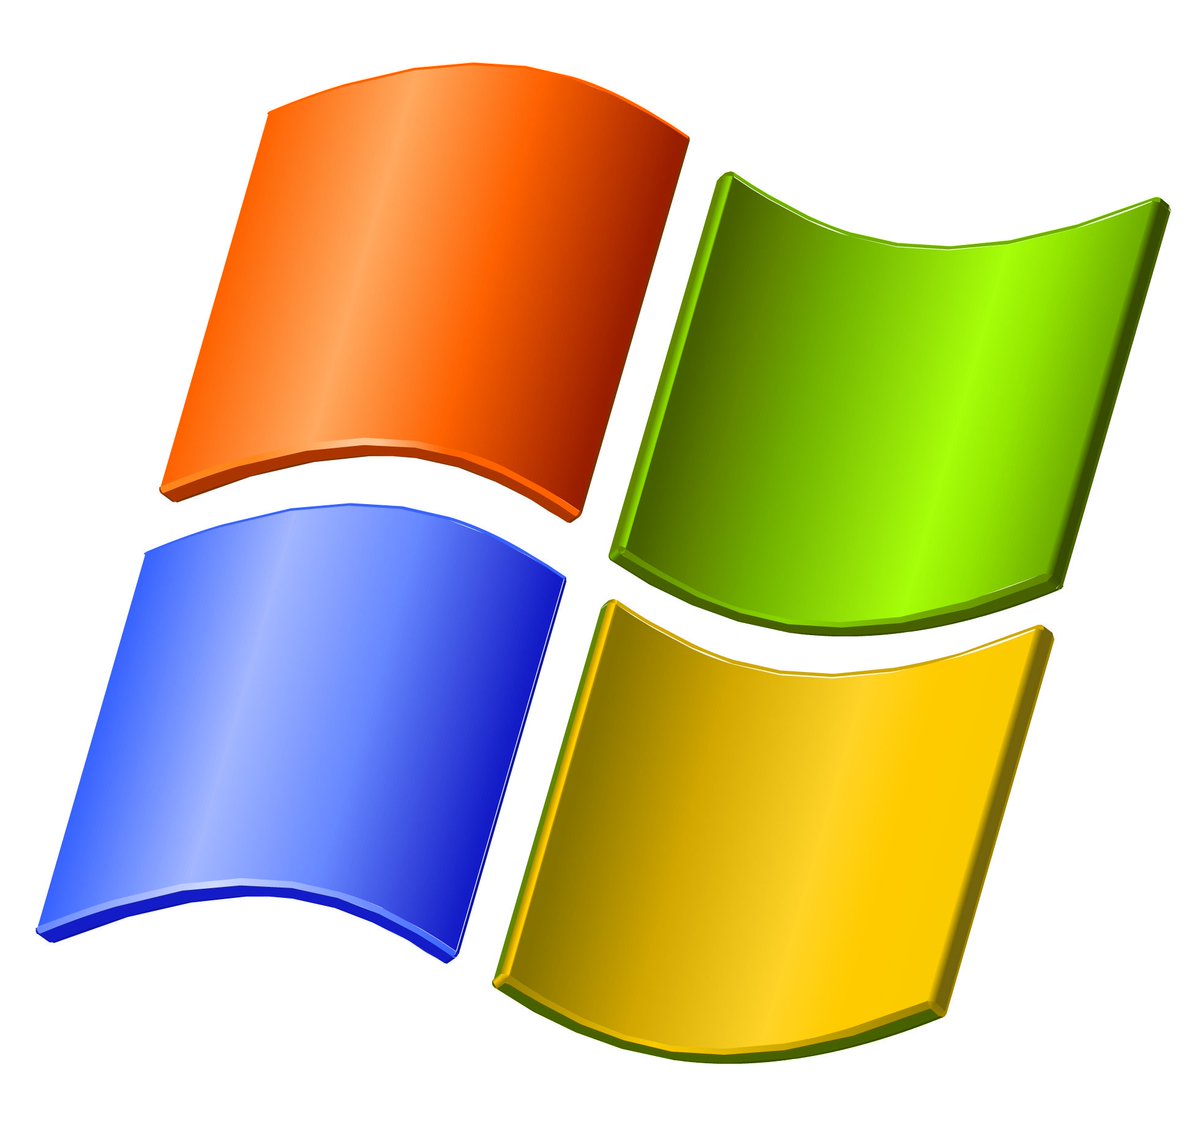 ねこはち お前だけは絶対に許さない 初めて触ったのが Windows 98 だったから 触った期間 が一番長かったのが Windows Xp と Windows 7 だったから